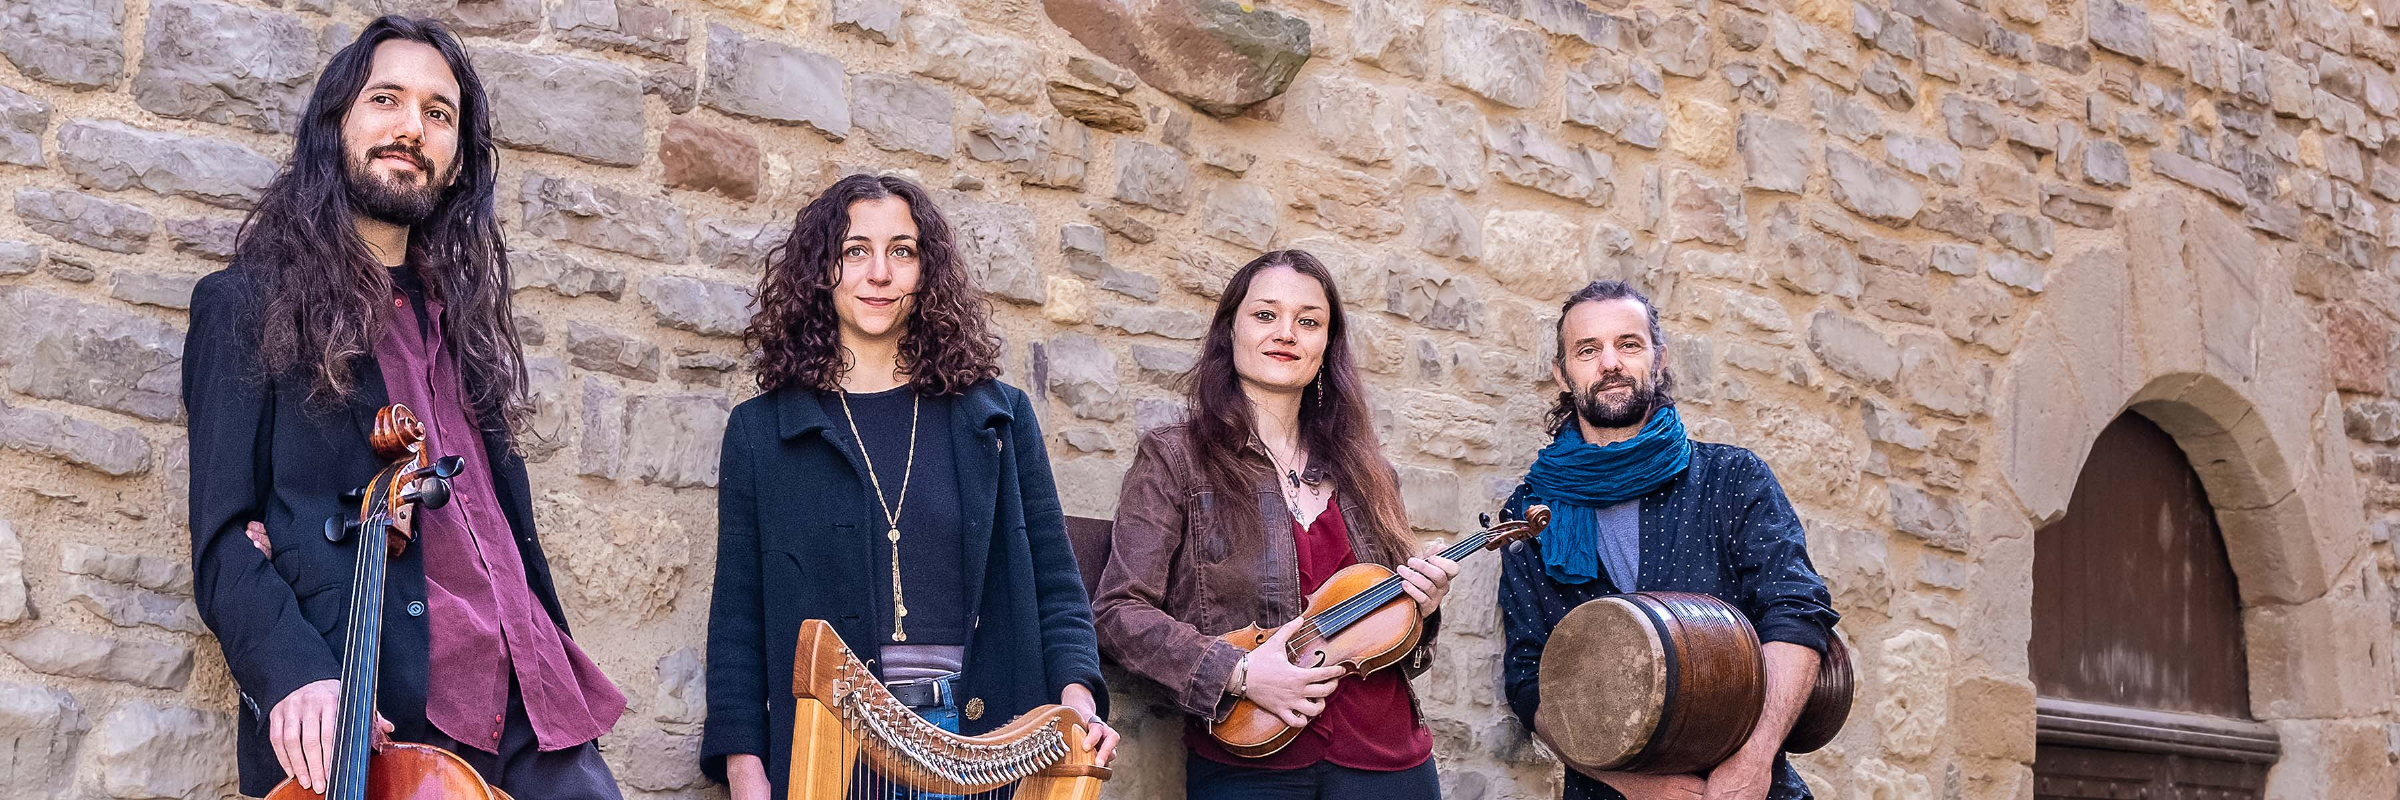 Yenalaba, groupe de musique Musiques du monde en représentation à Hérault - photo de couverture